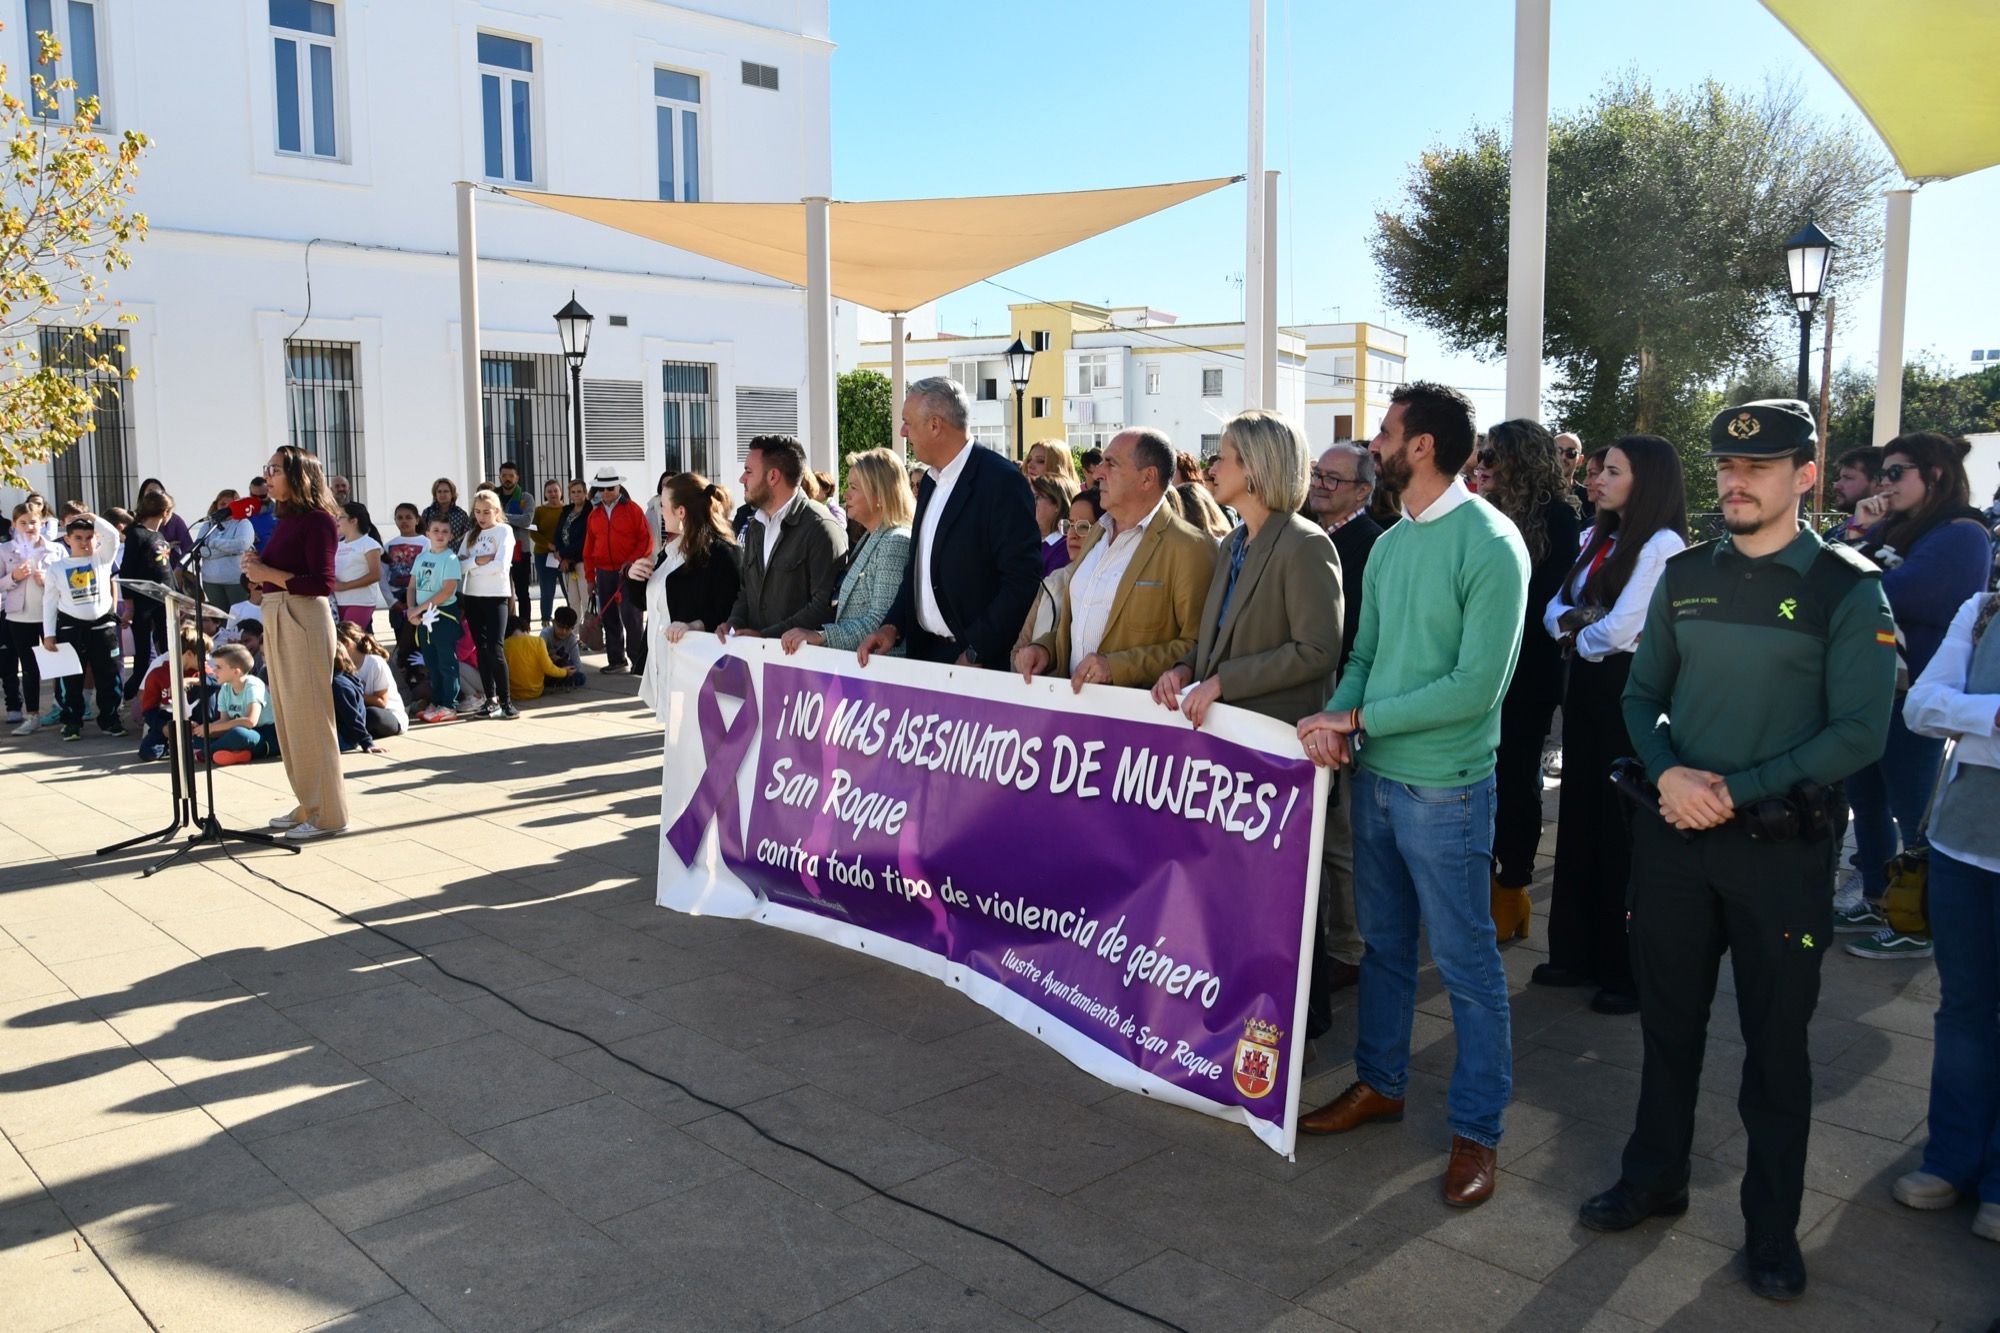 San Roque iza la bandera reivindicativa de la erradicación de la violencia de género.